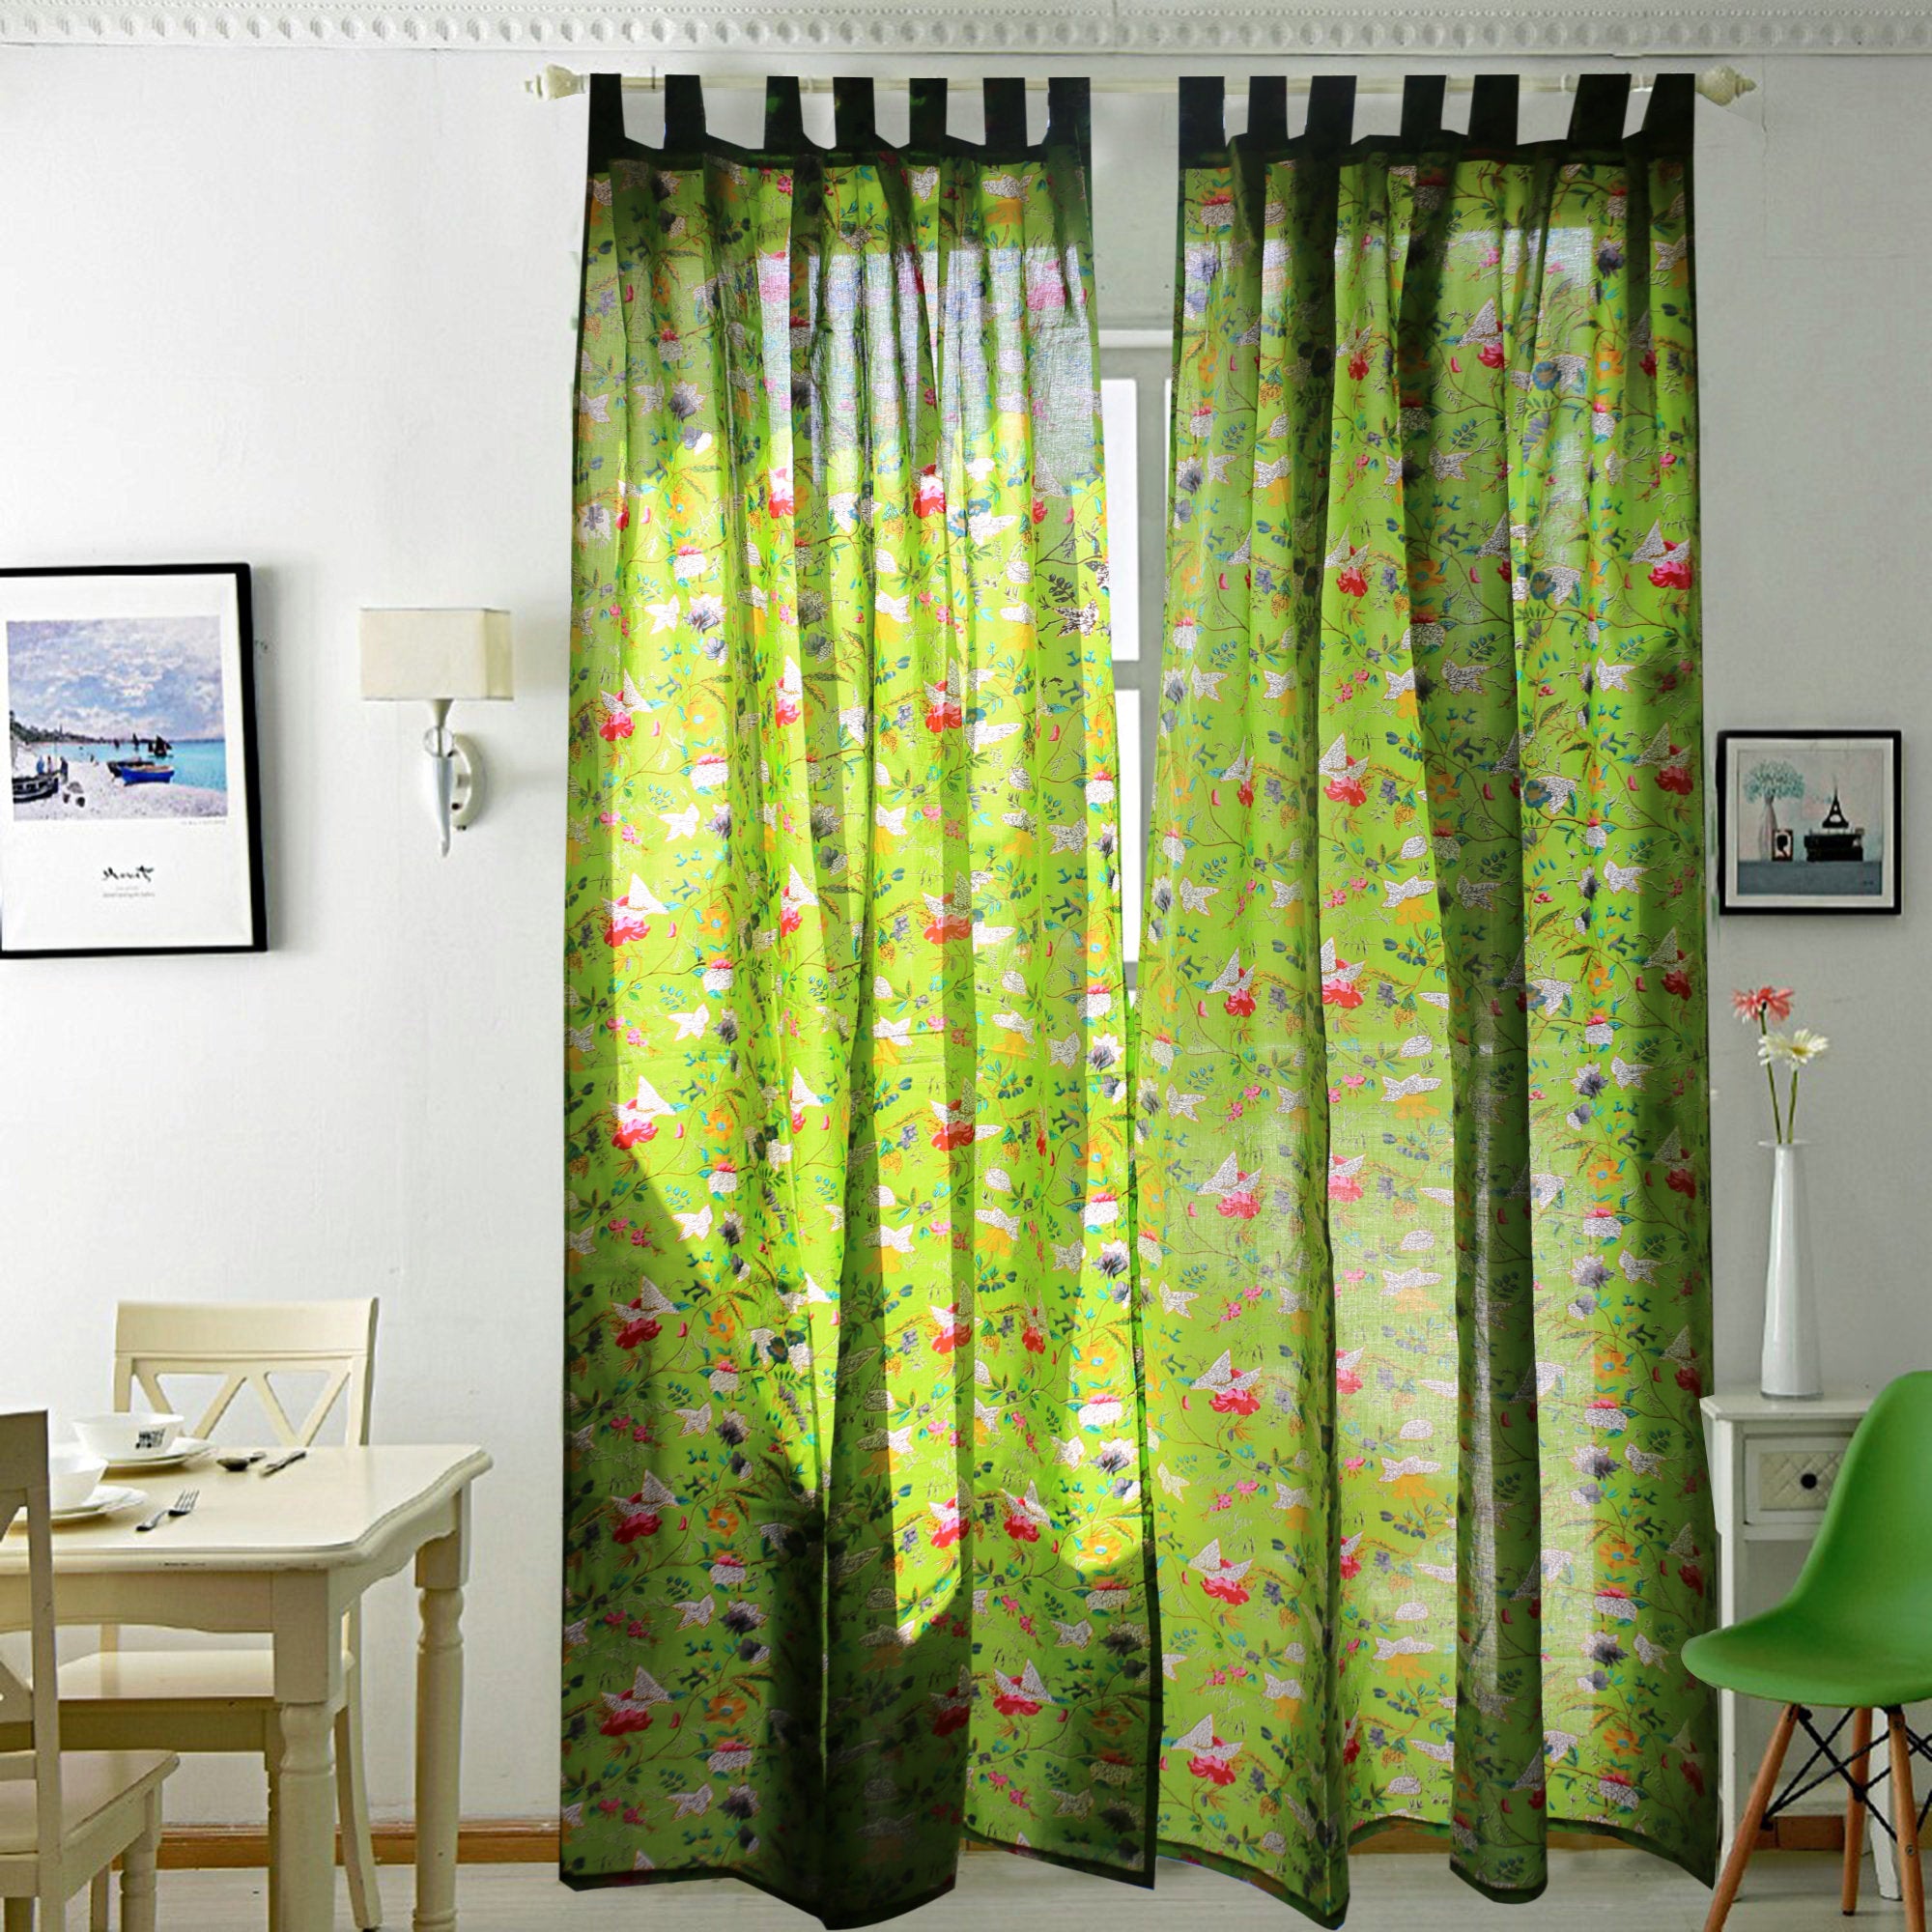 'Enchanted Garden' 100% Cotton Boho Curtains